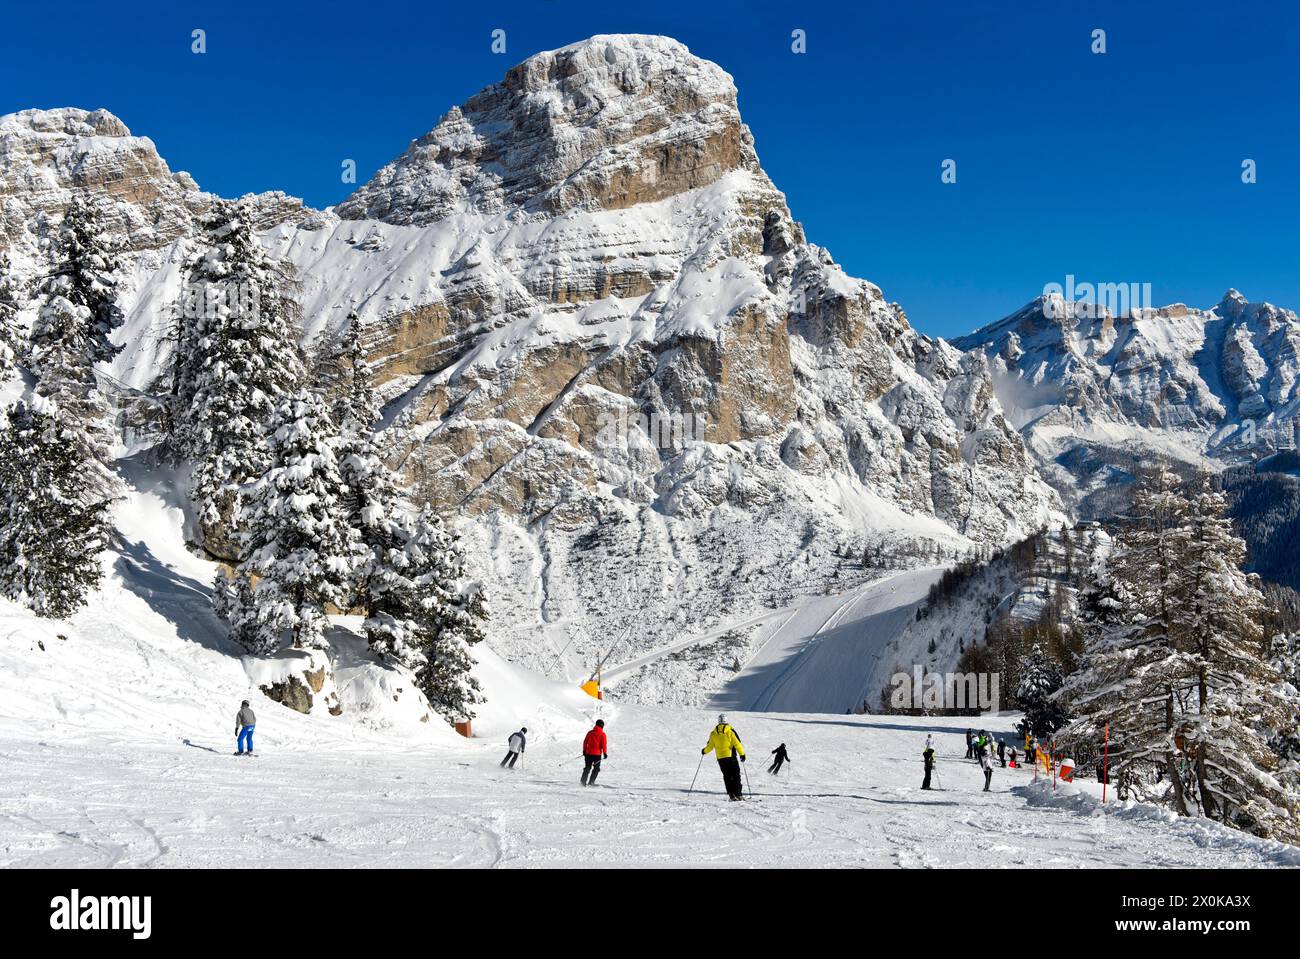 Sciatori su una pista nella località di sport invernali di Colfosco, Colfosco, ai piedi della vetta Sassongher, nel comprensorio sciistico dell'alta Badia, Dolomiti, alto Adige, Italia Foto Stock